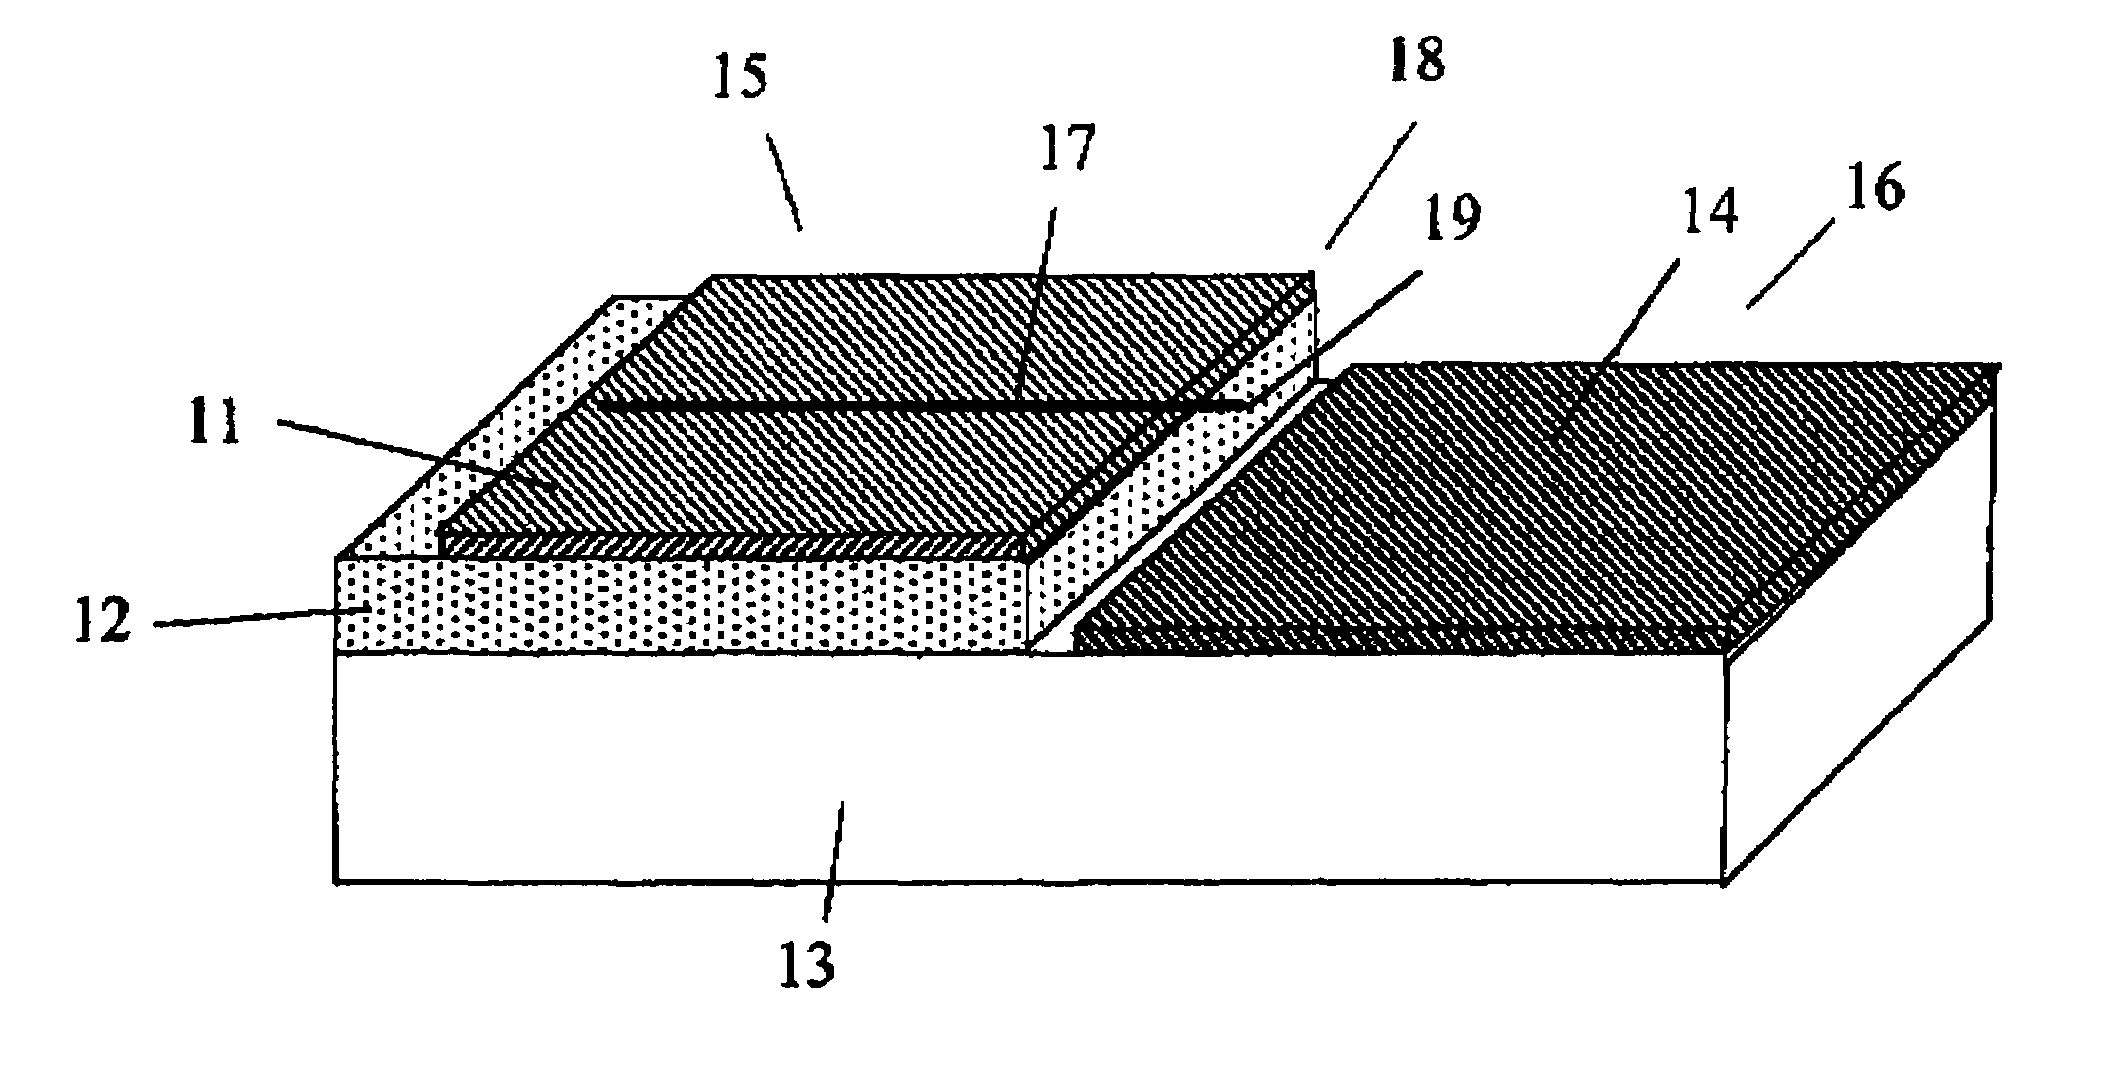 Nanotube-based vacuum devices